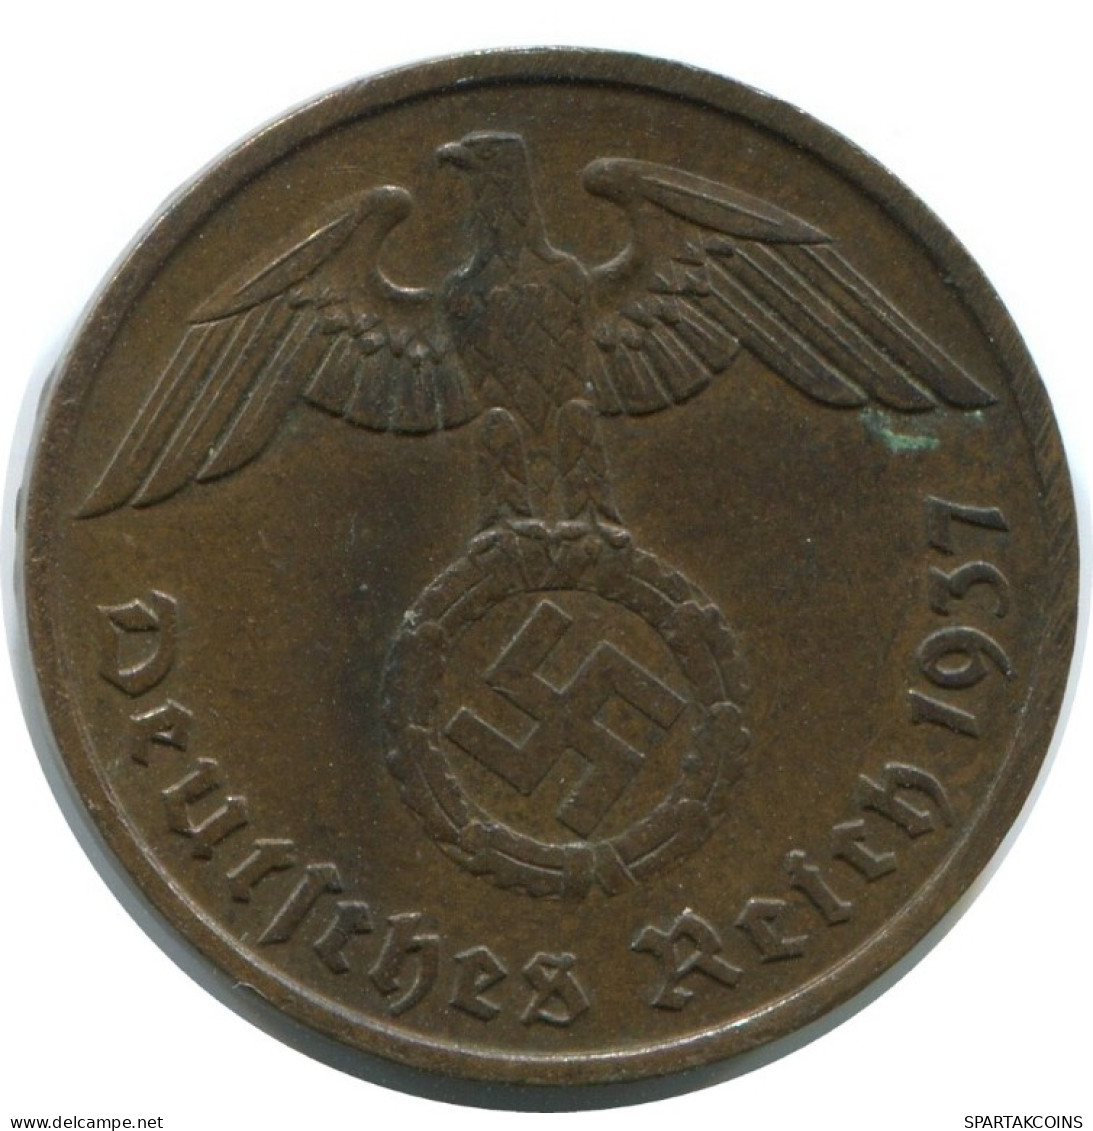 2 REICHSPFENNIG 1937 A GERMANY Coin #AD855.9.U.A - 2 Renten- & 2 Reichspfennig